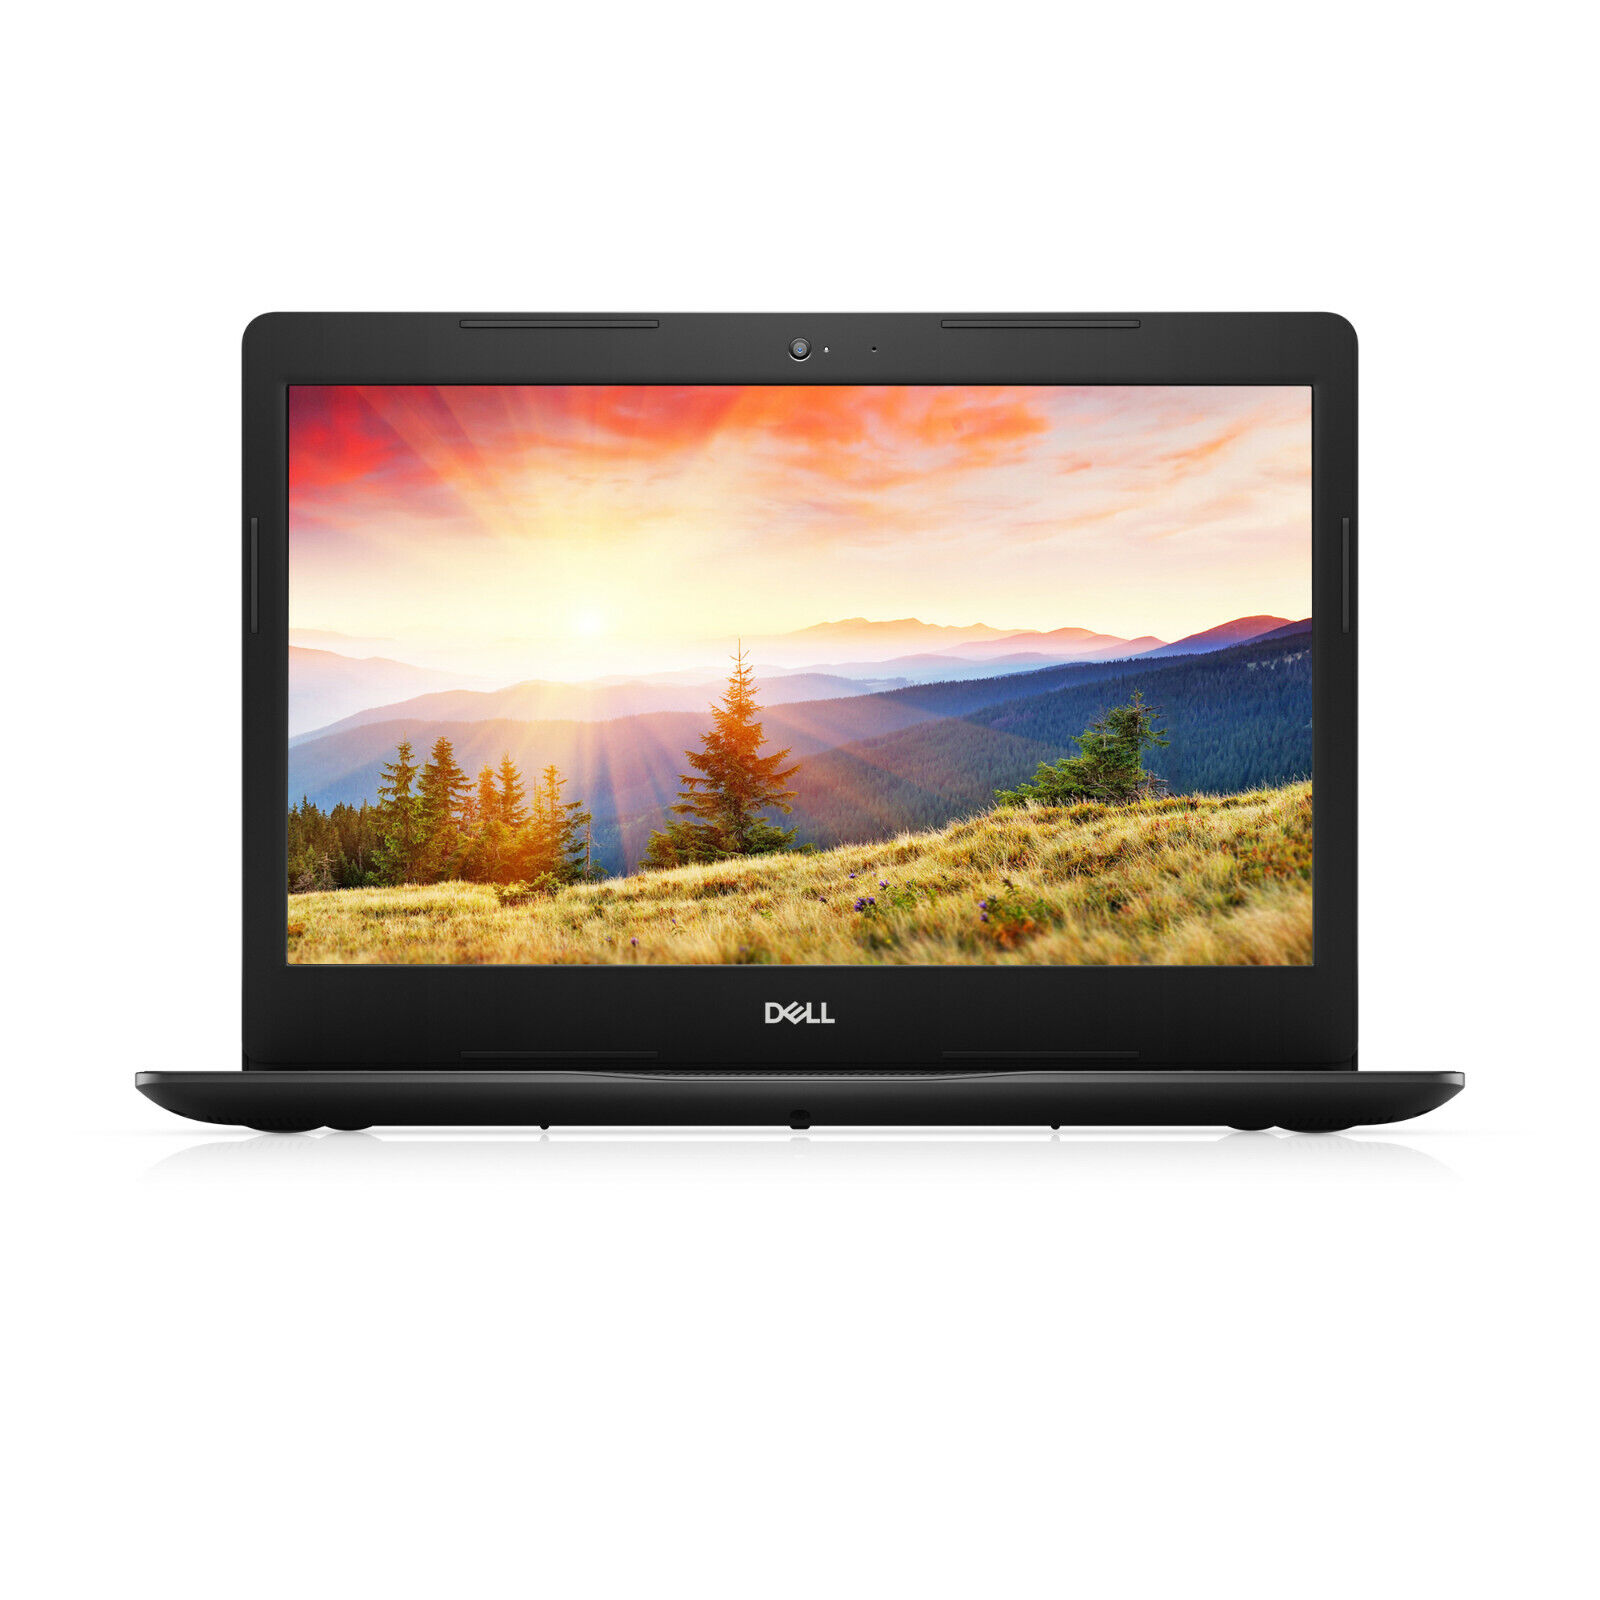 Dell Inspiron 14" 10th-Gen Intel i5-1035G 4GB RAM 128GB SSD Windows 10 Laptop Dell I34933464BLKPUS